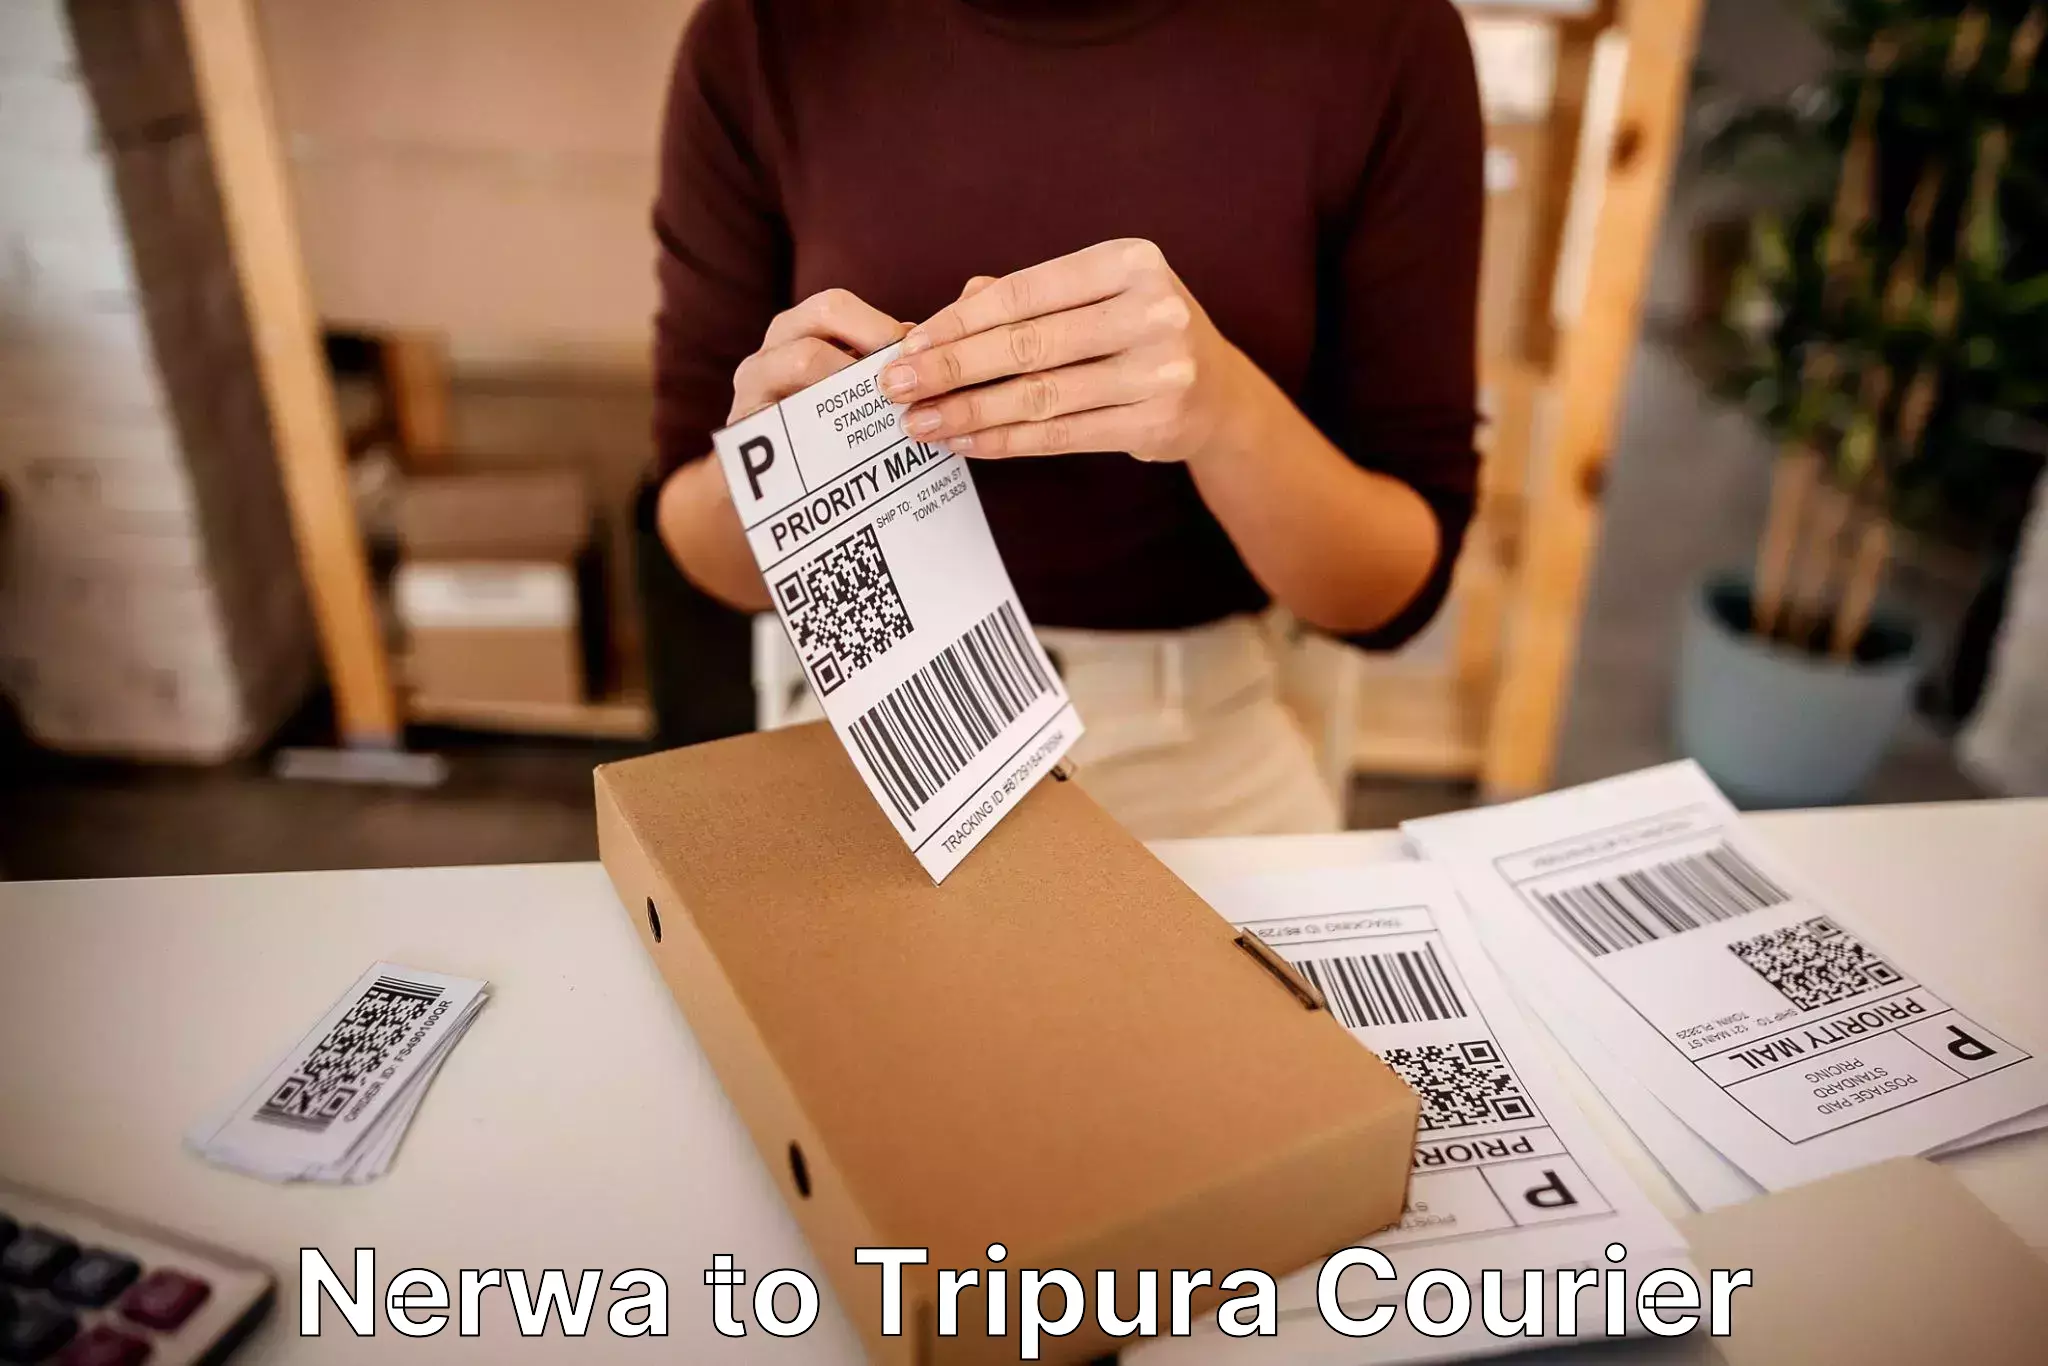 Residential furniture transport Nerwa to Udaipur Tripura